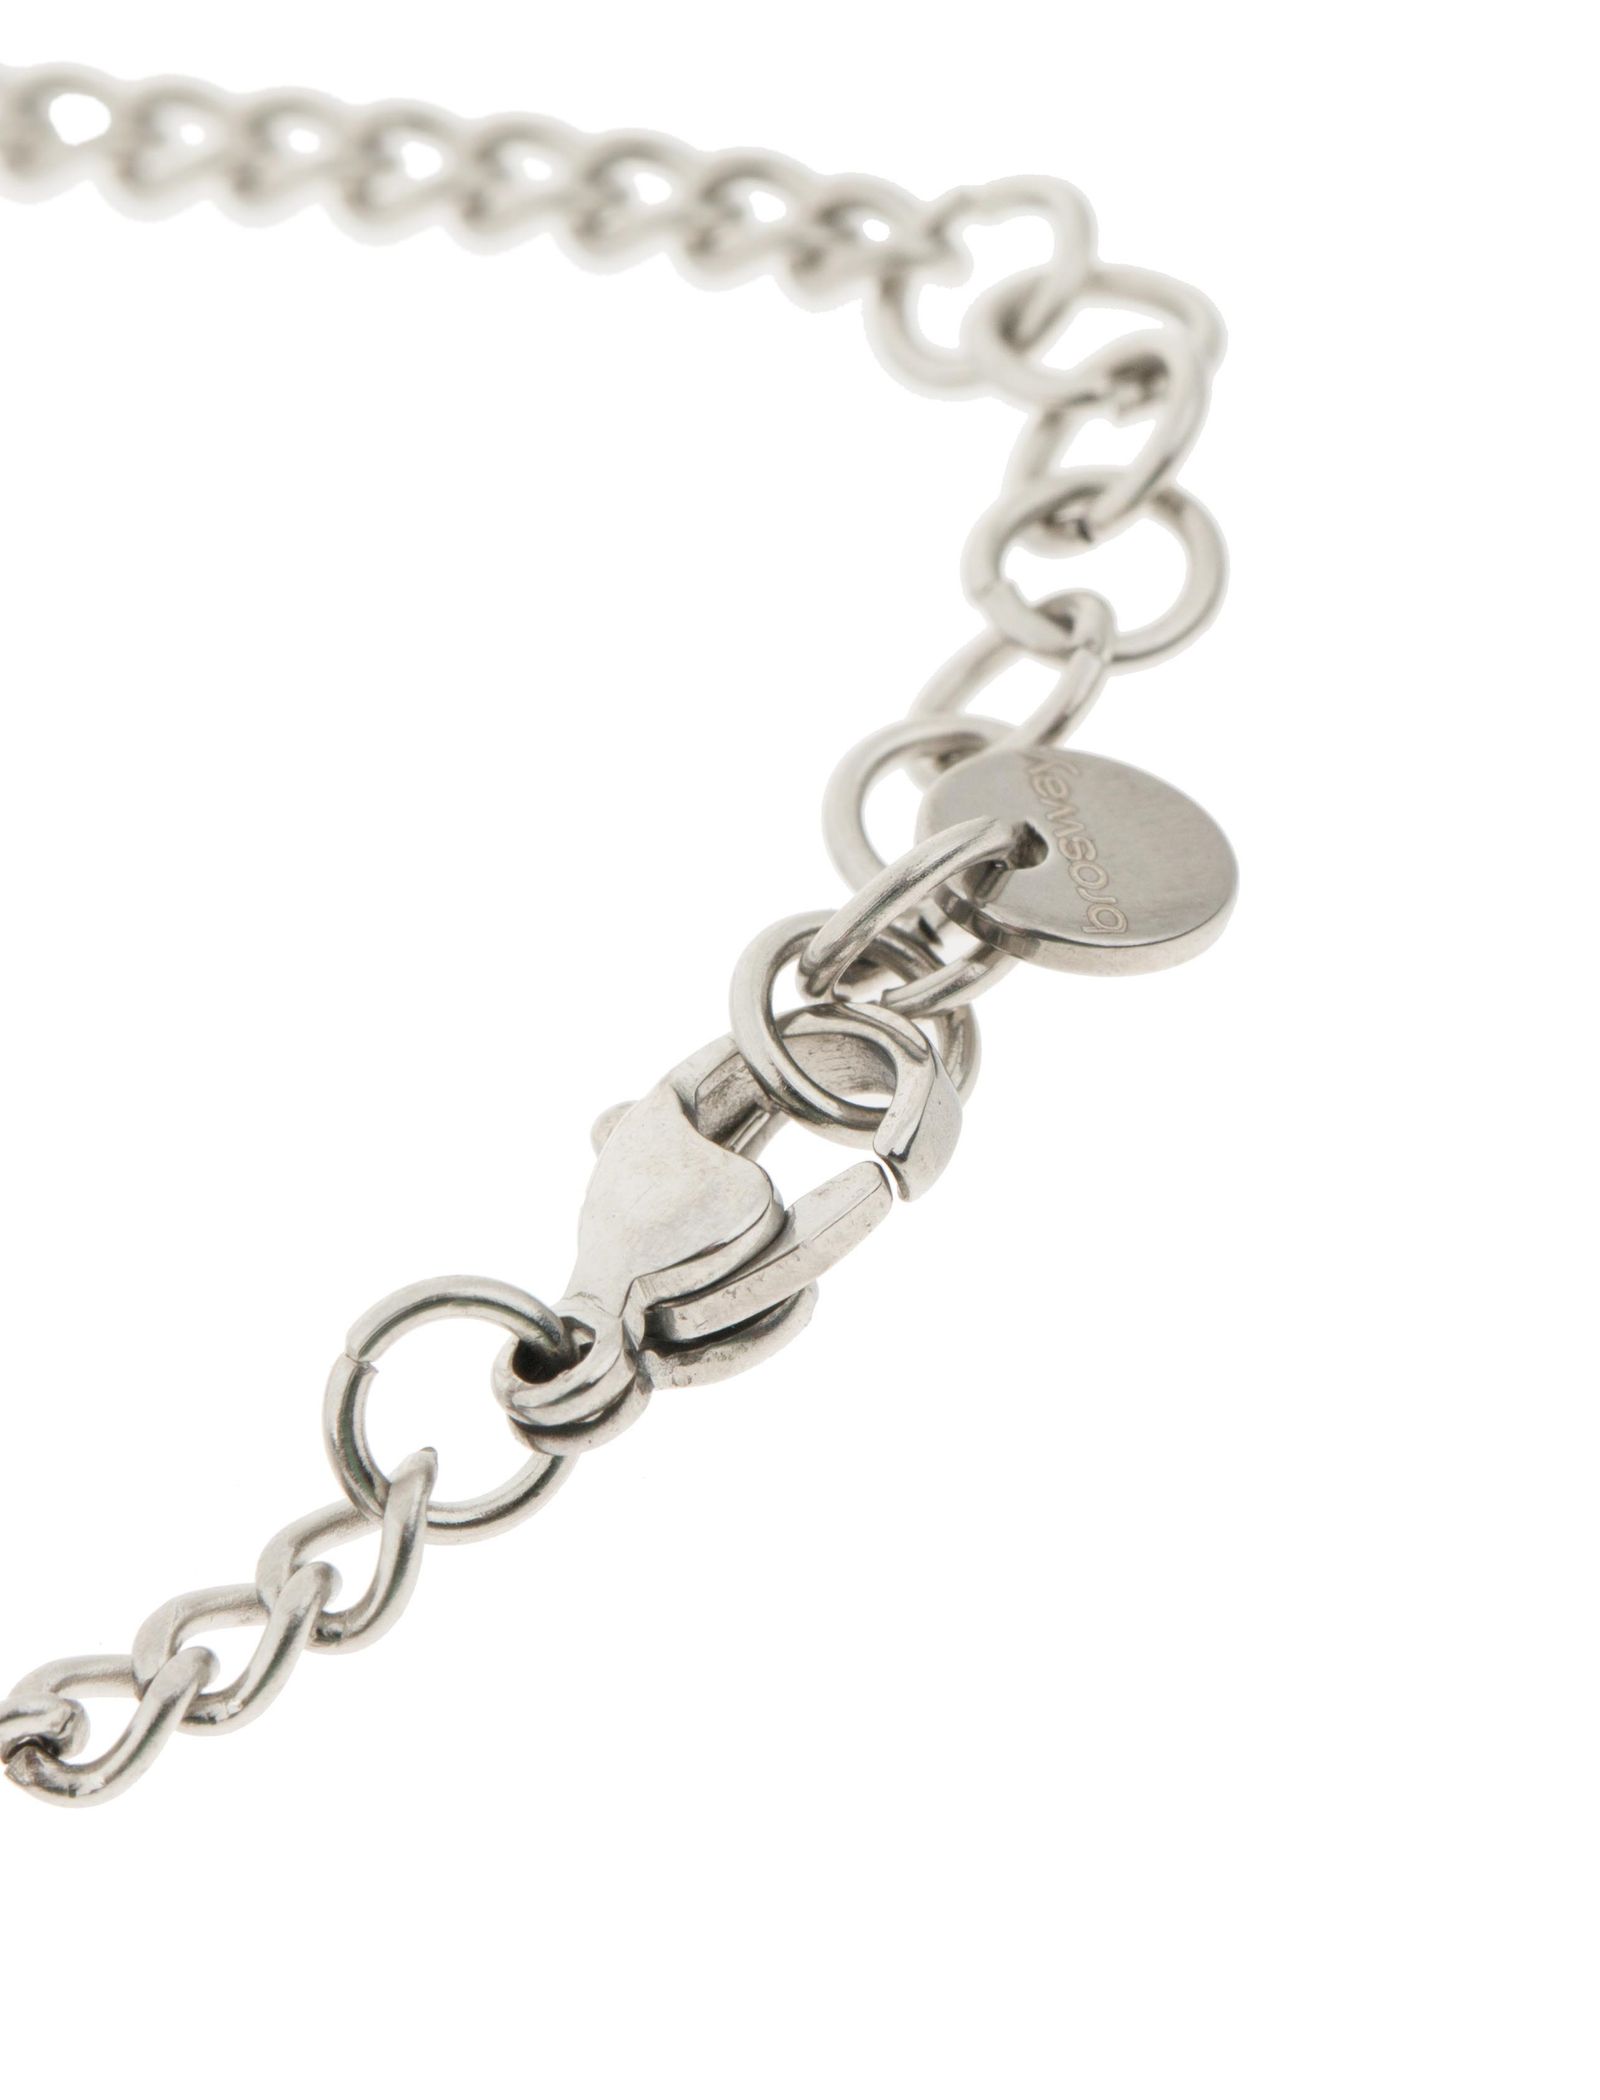 دستبند استیل زنجیری زنانه - برازوی - نقره اي  - 6